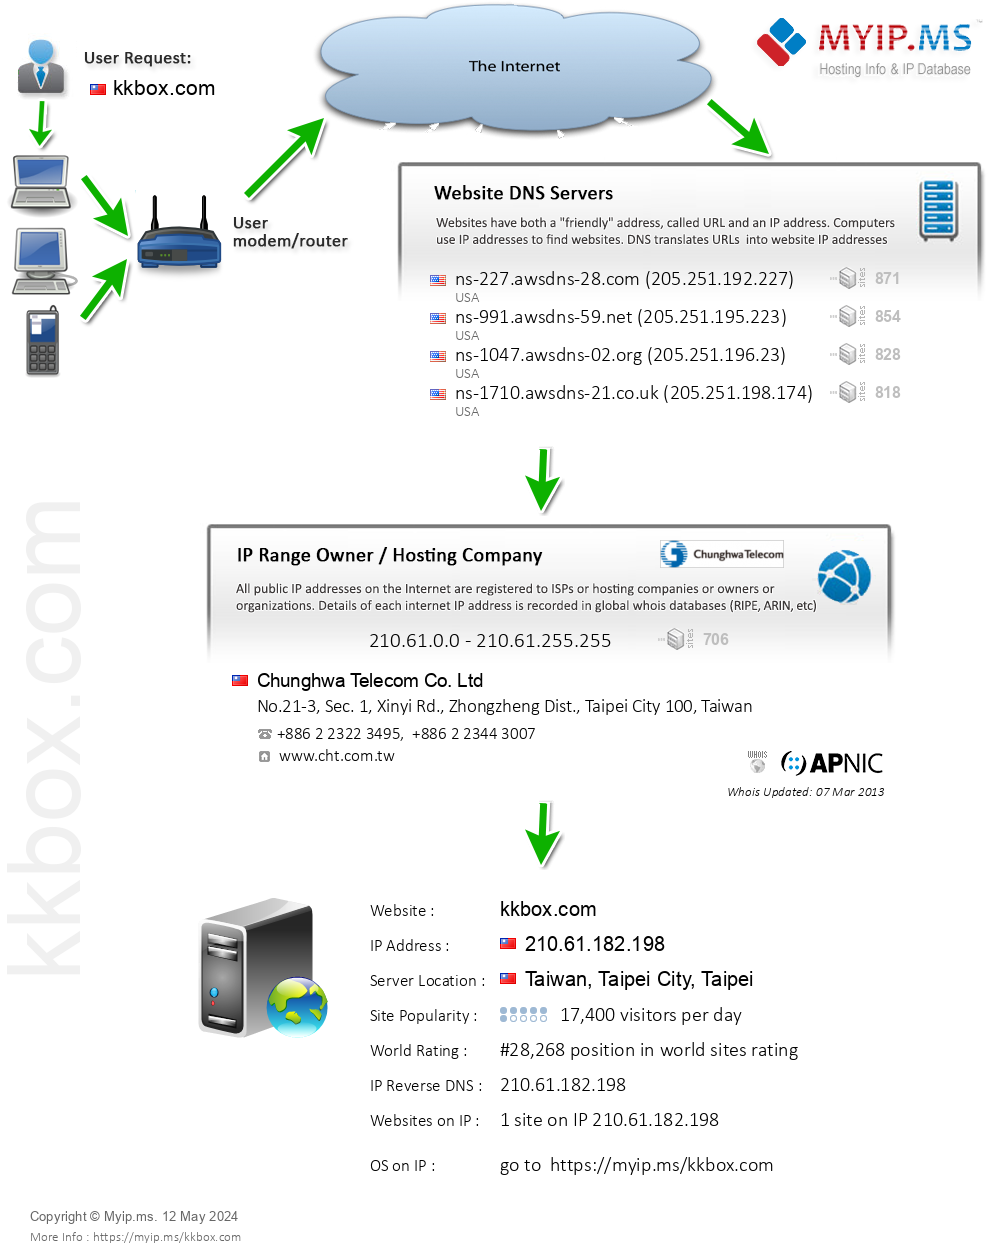 Kkbox.com - Website Hosting Visual IP Diagram